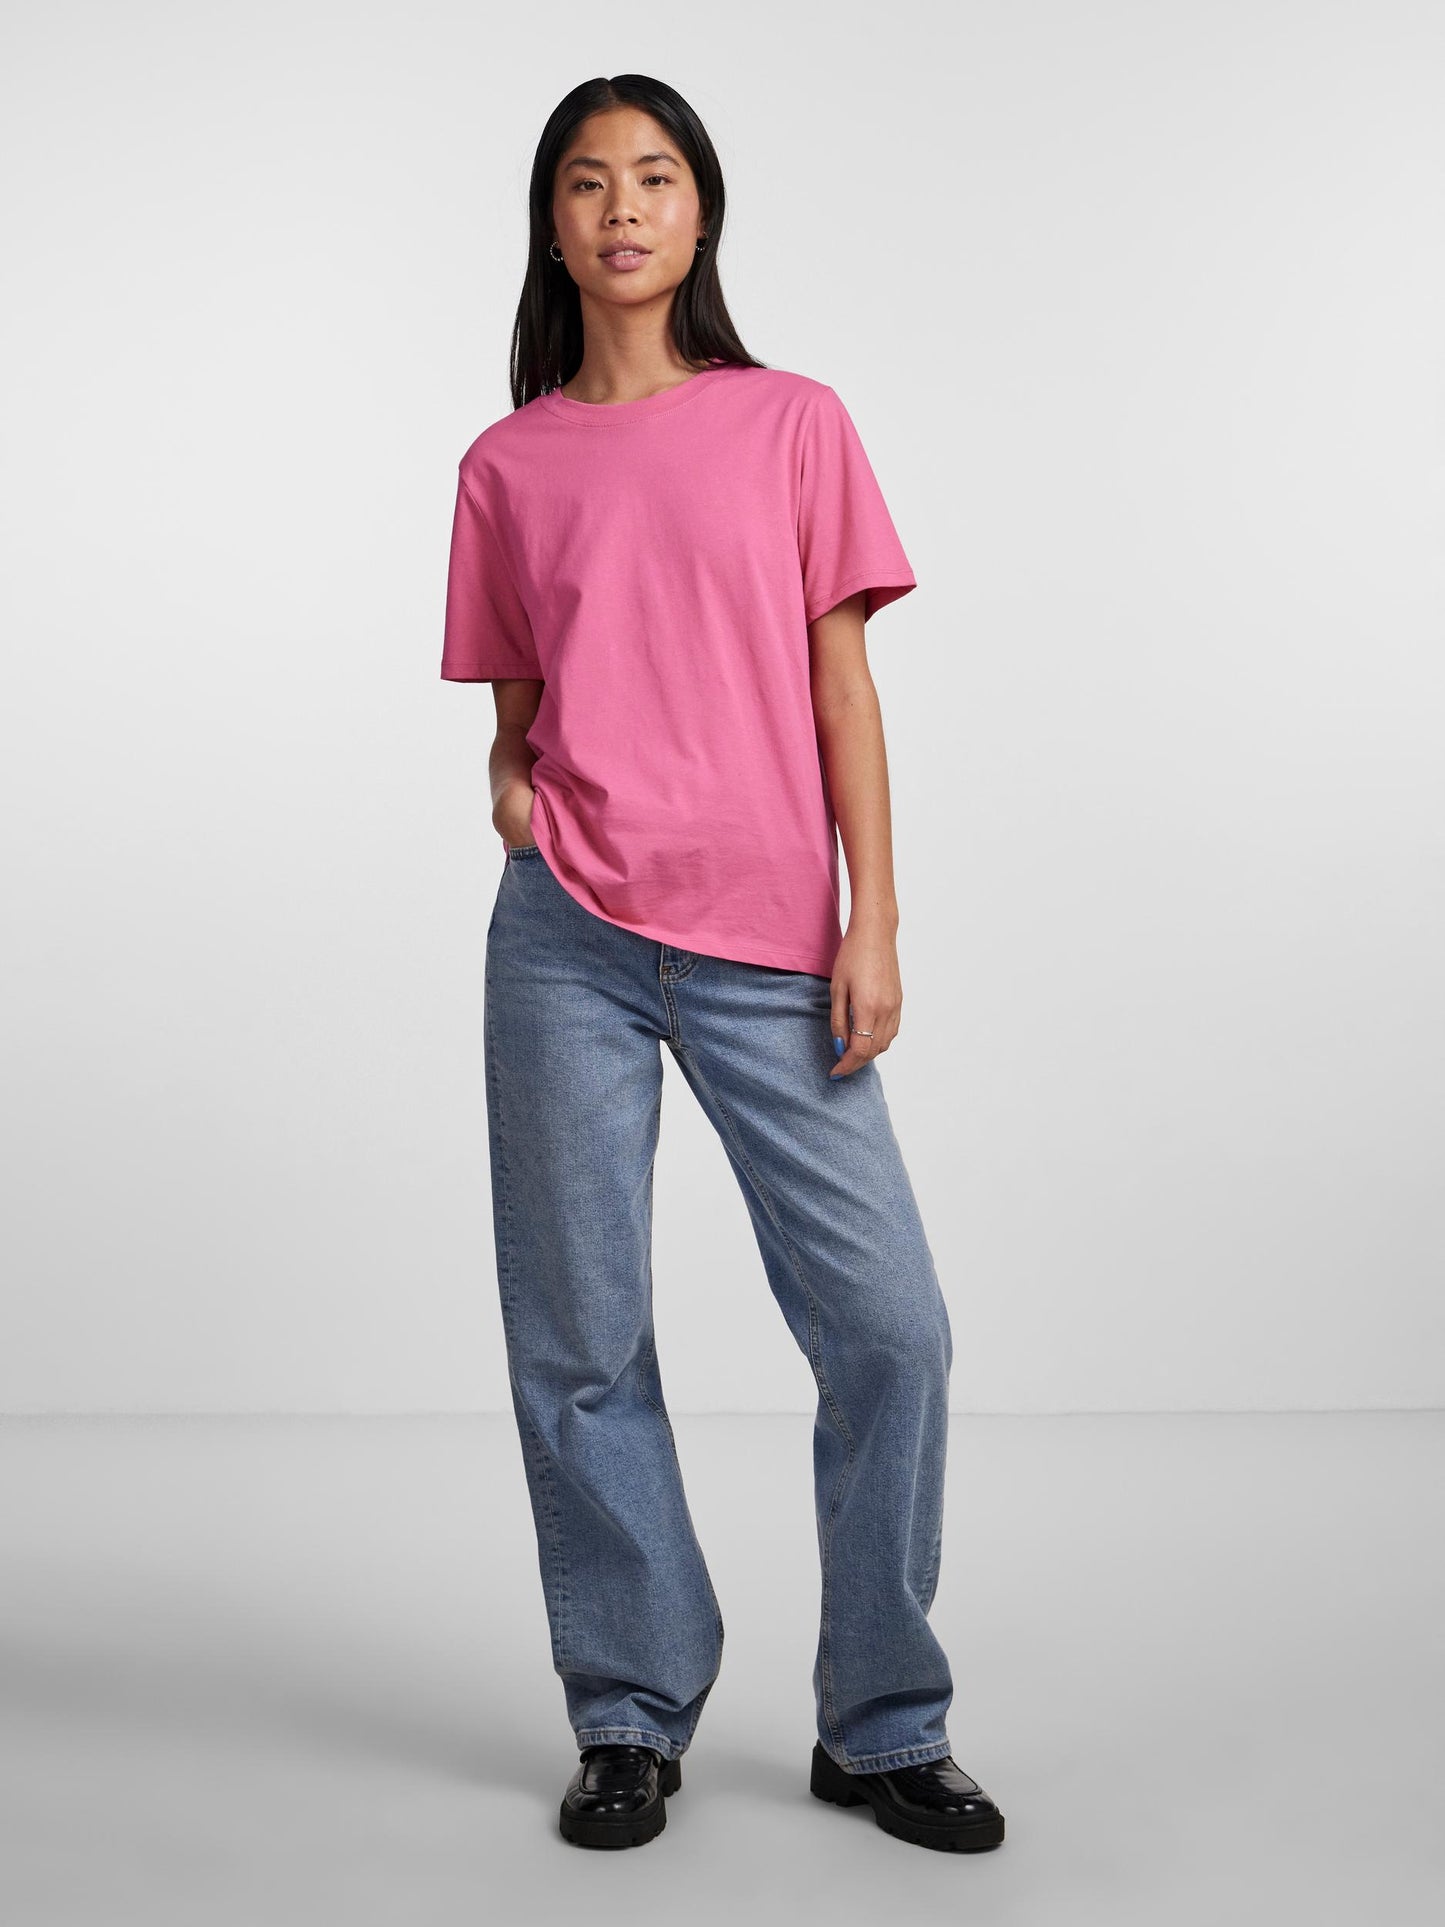 
                  
                    PCRIA Shocking Pink Solid T-Shirt
                  
                